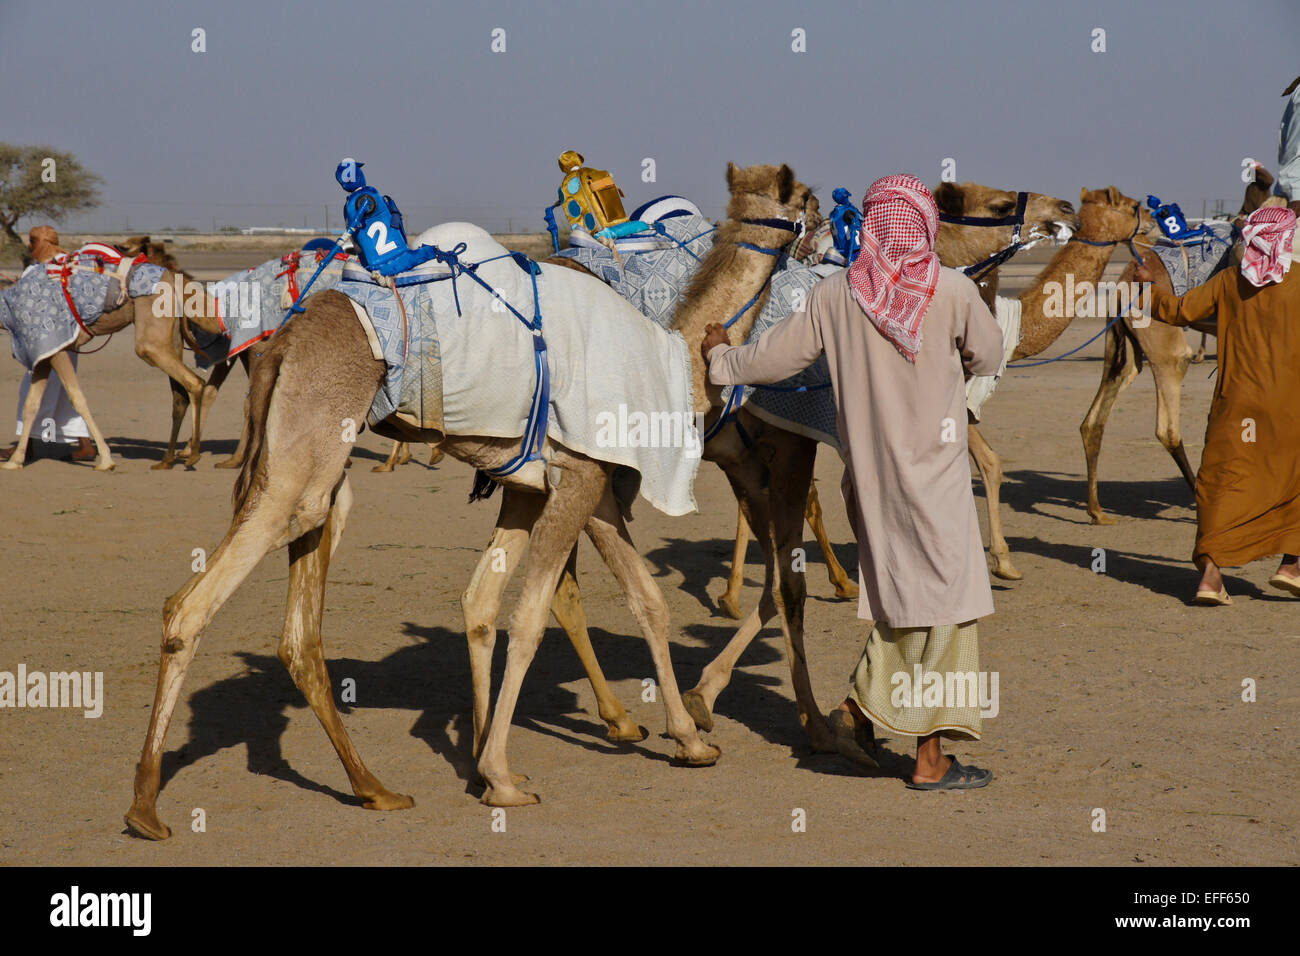 Racing Kamele mit Funk (Roboter) Jockeys auf Al-Malagit Rennstrecke, Abu Dhabi, Vereinigte Arabische Emirate Stockfoto